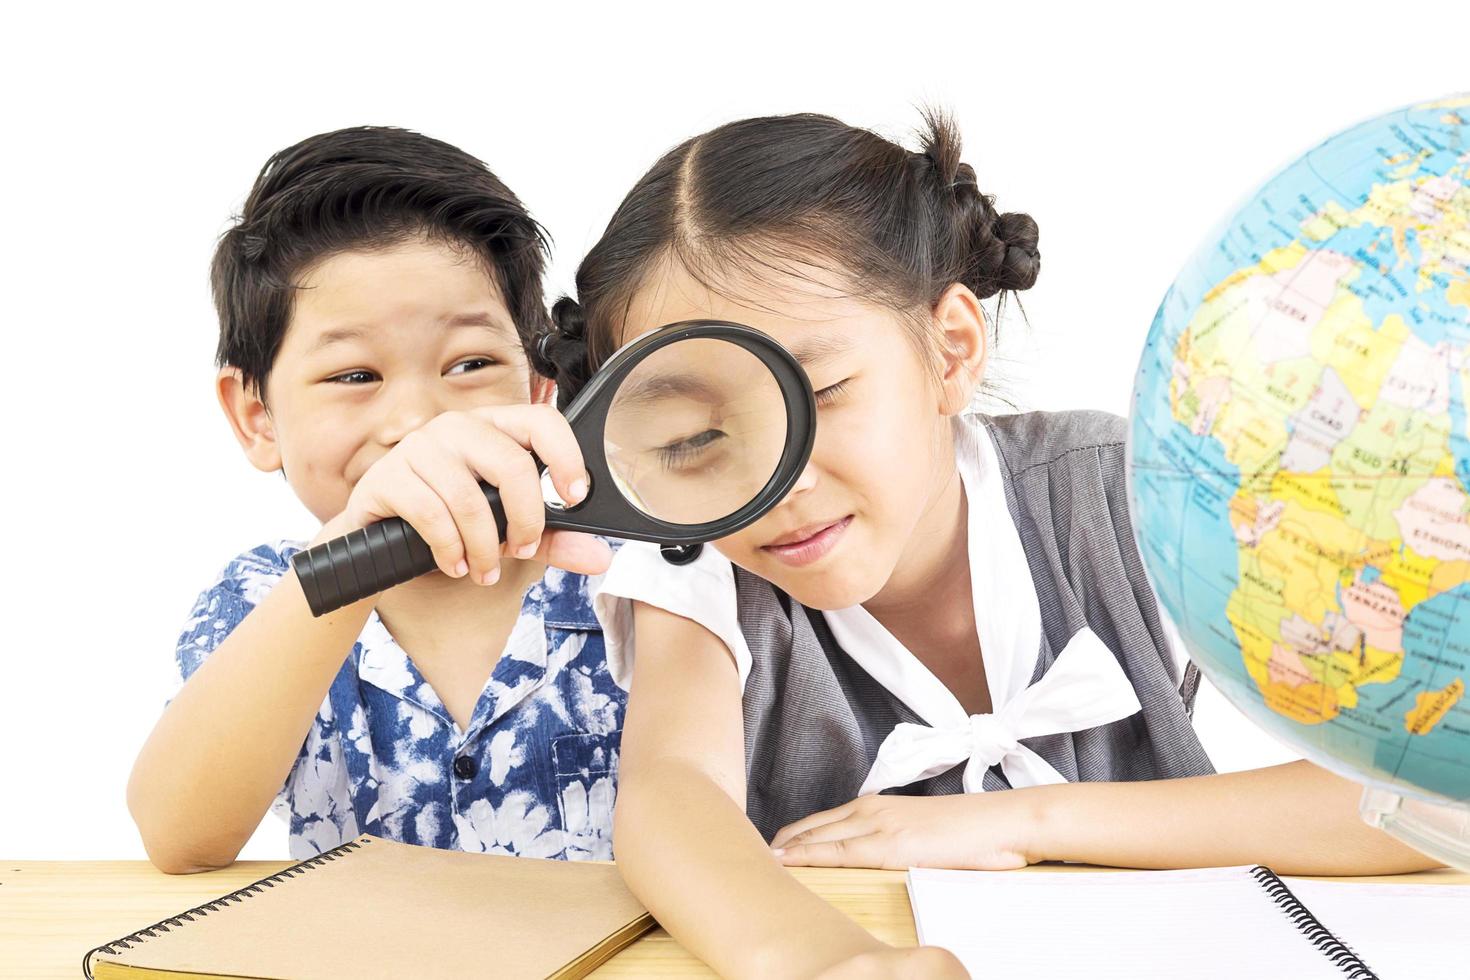 les enfants asiatiques étudient le globe à l'aide d'une loupe sur fond blanc photo